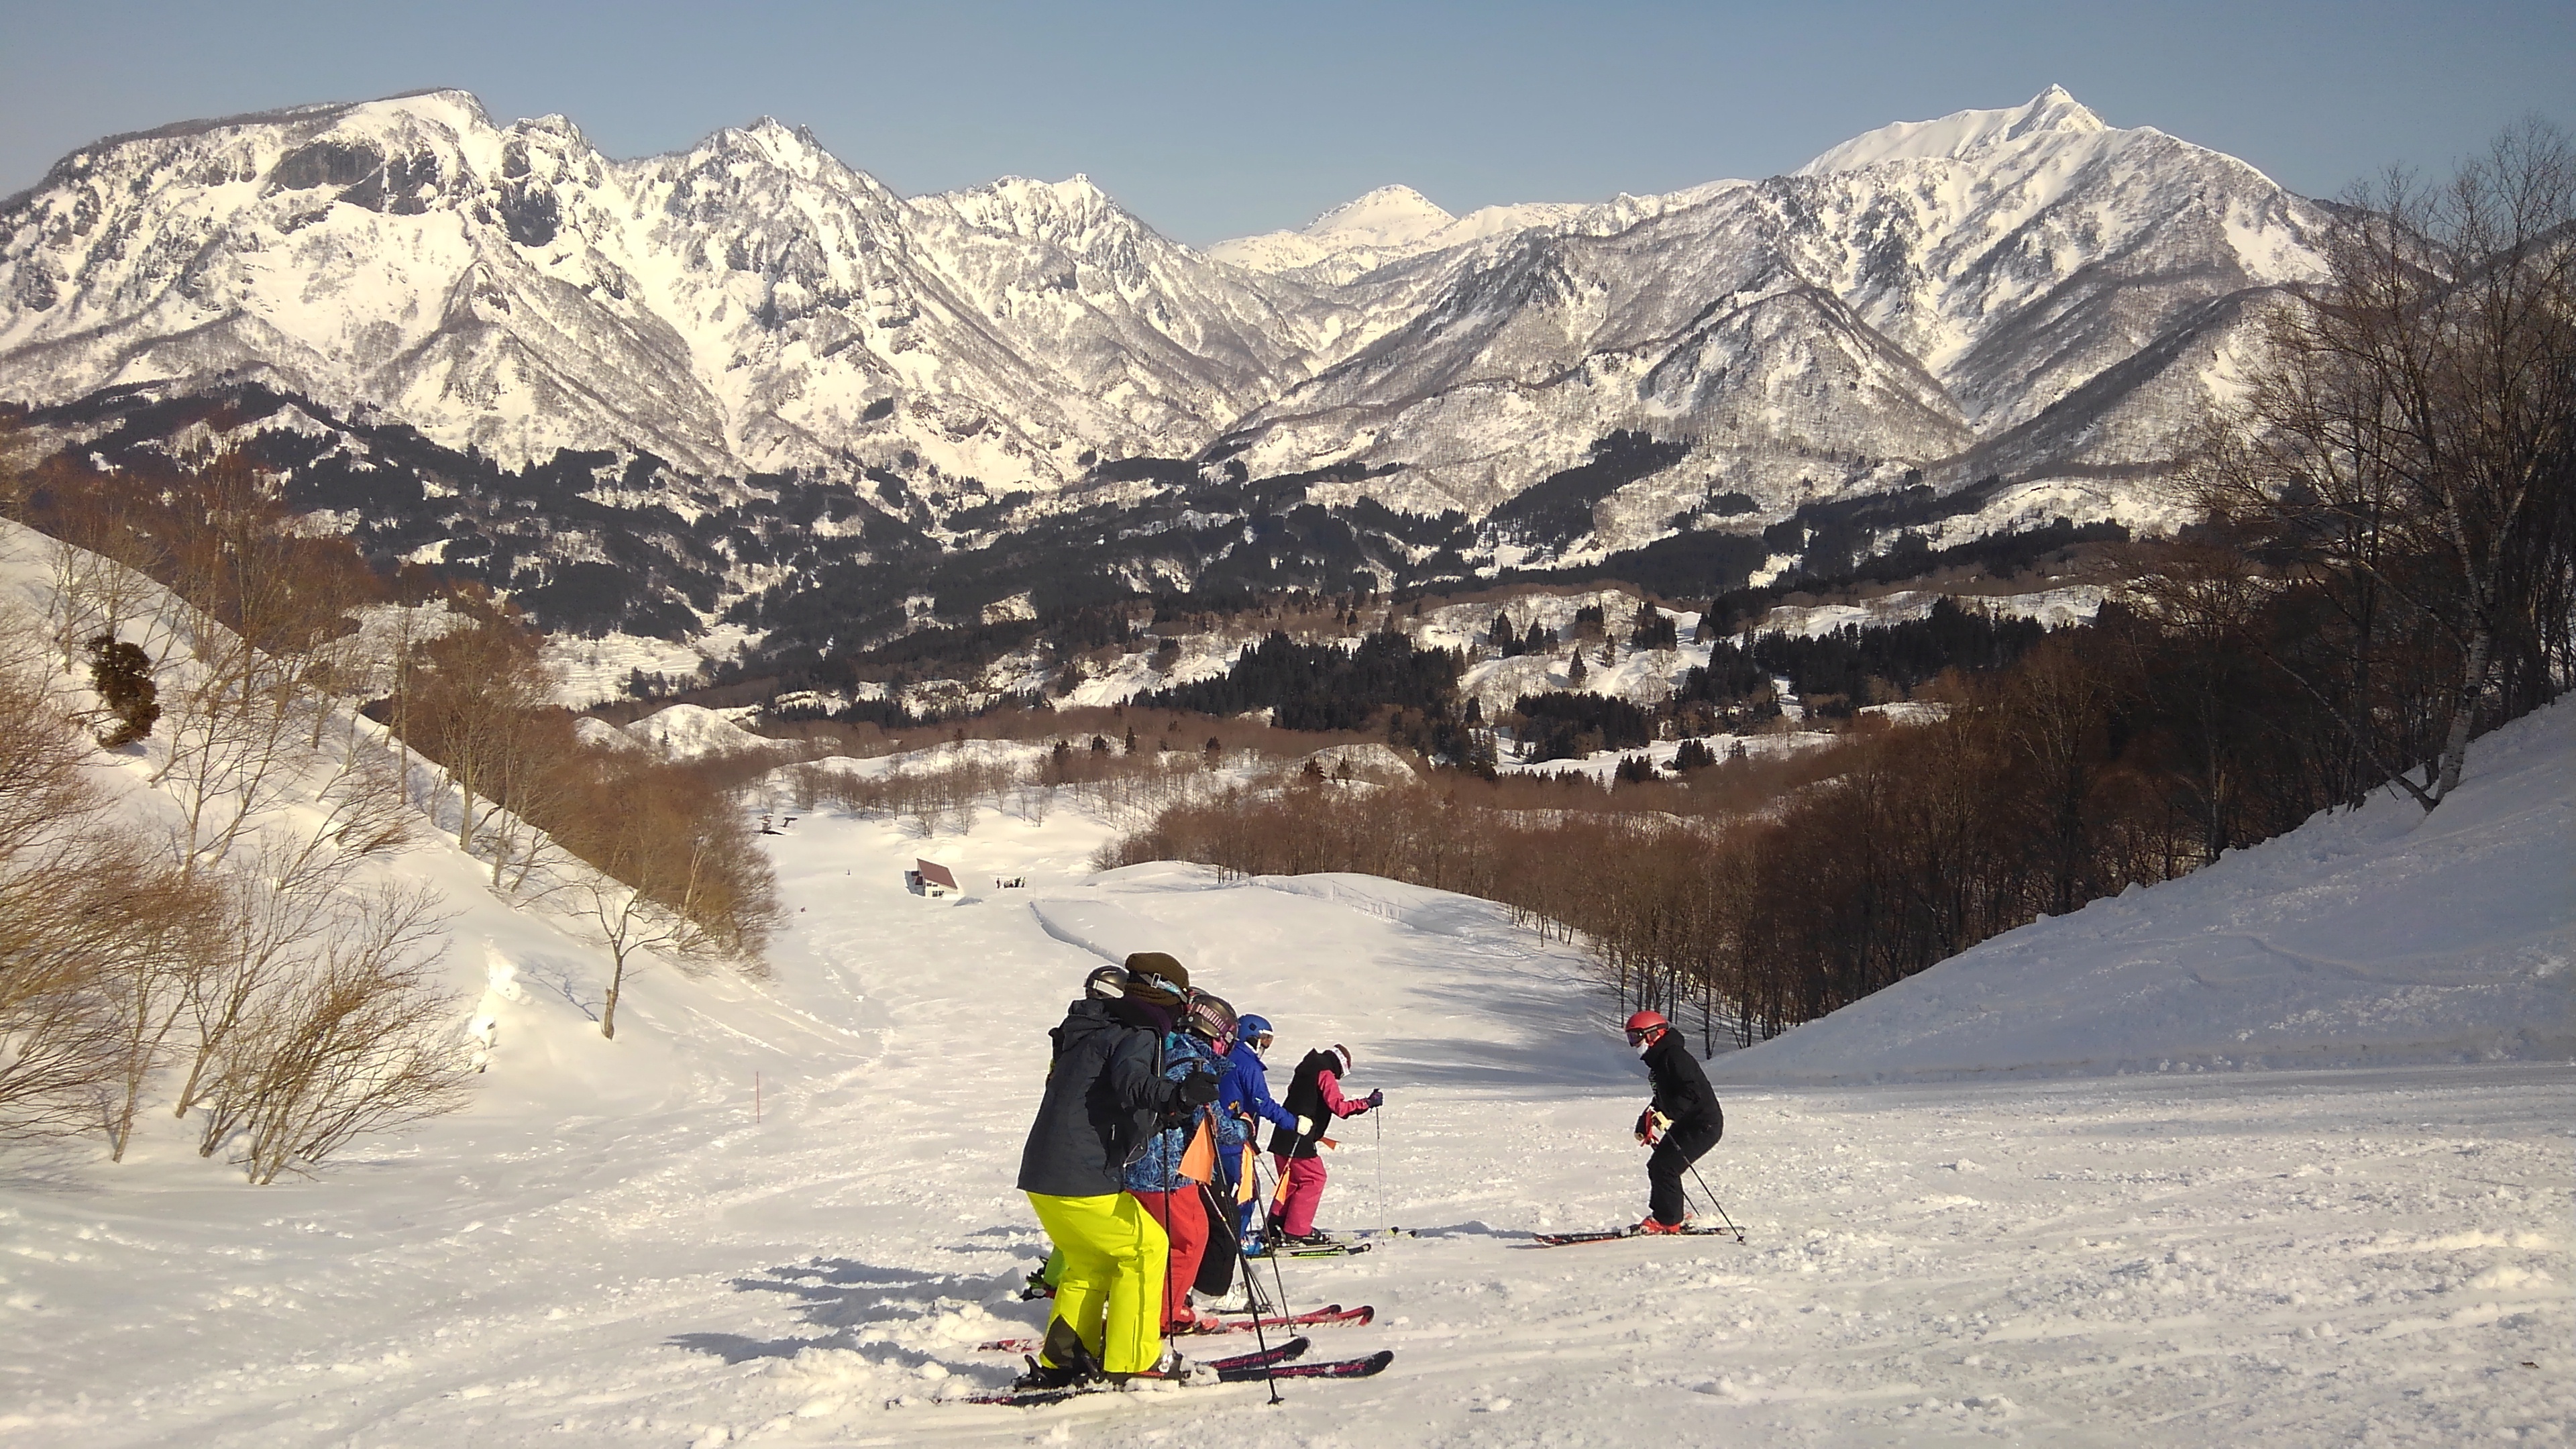 菅平高原スキー場バスツアー ナイスミドル2.5泊4日